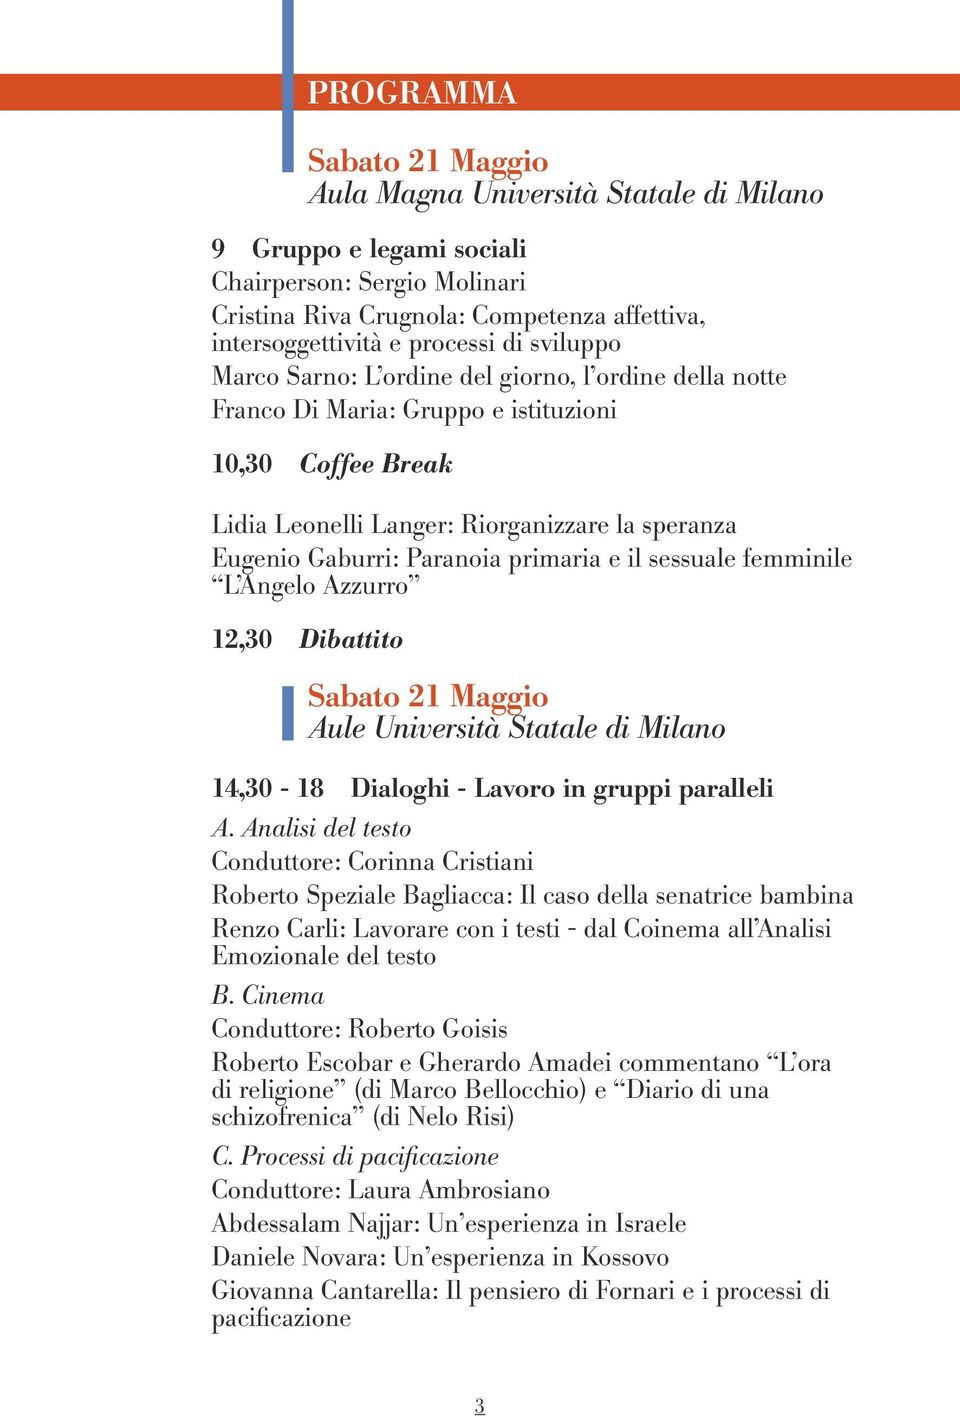 primaria e il sessuale femminile L Angelo Azzurro 12,30 Dibattito Sabato 21 Maggio Aule Università Statale di Milano 14,30-18 Dialoghi - Lavoro in gruppi paralleli A.